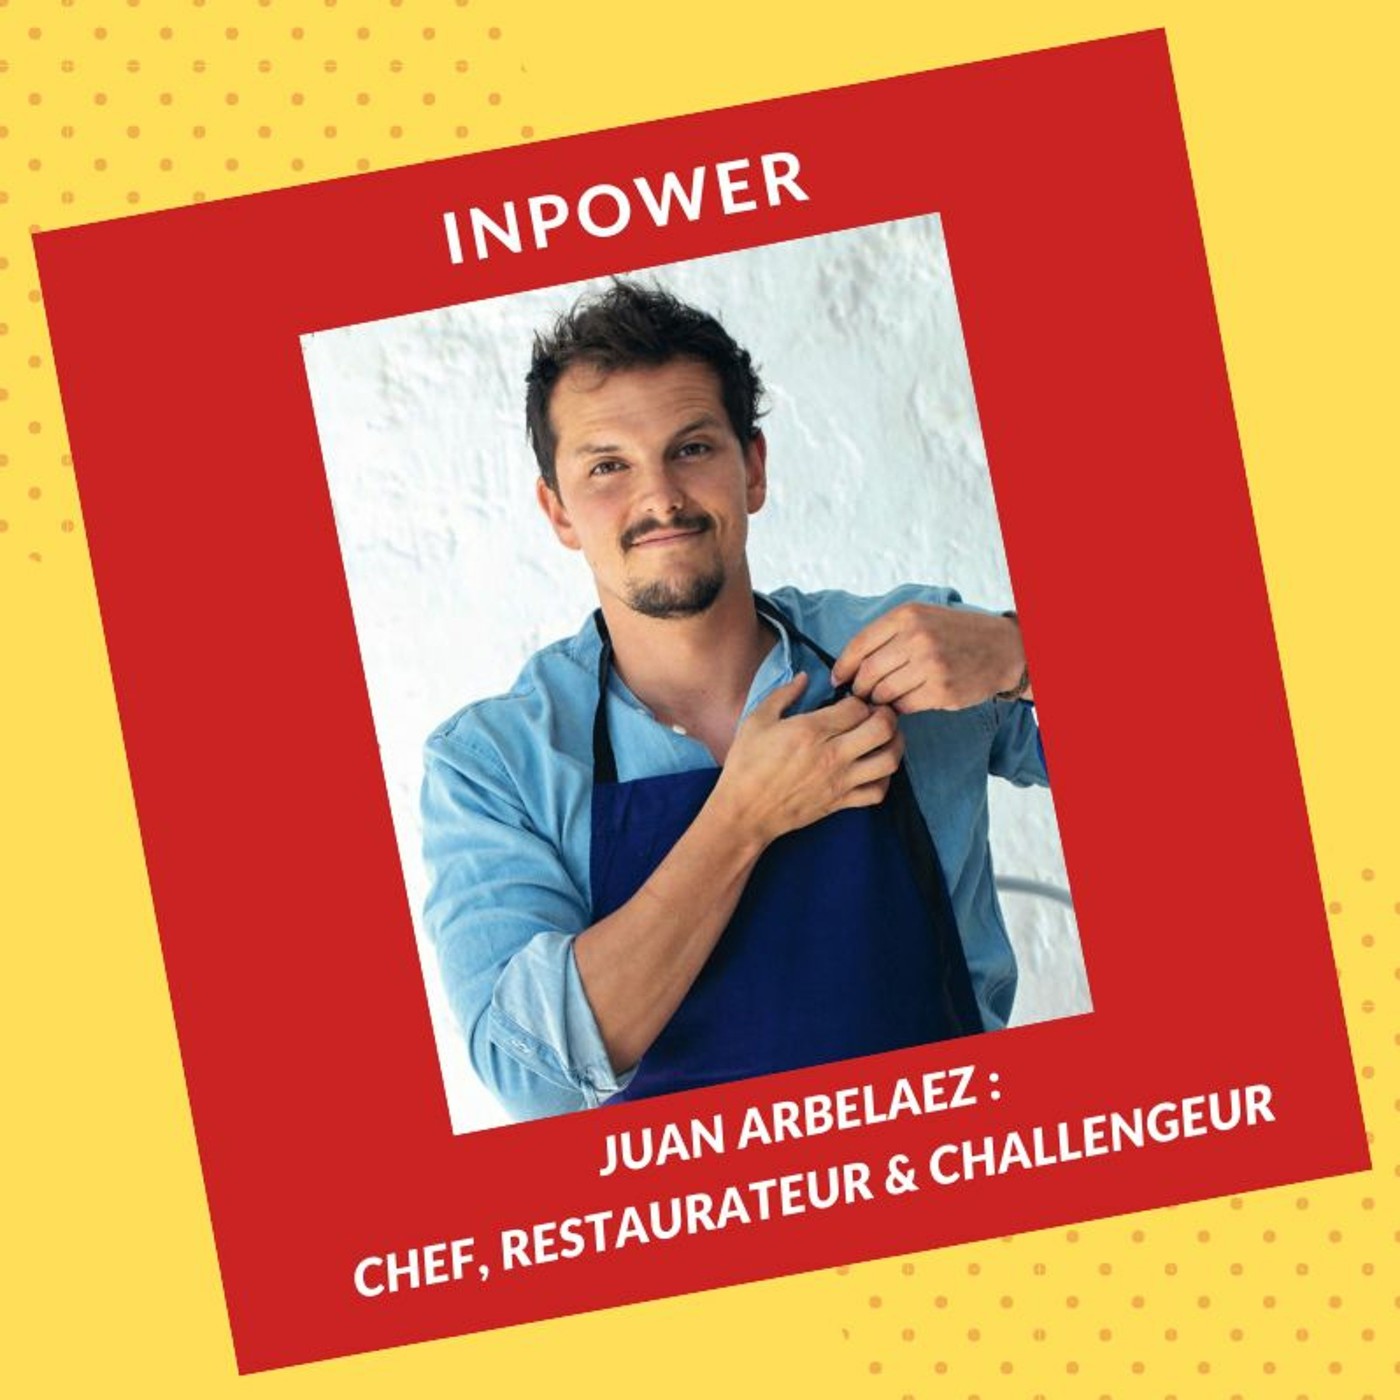 Juan Arbelaez - Chef, Restaurateur & Challengeur